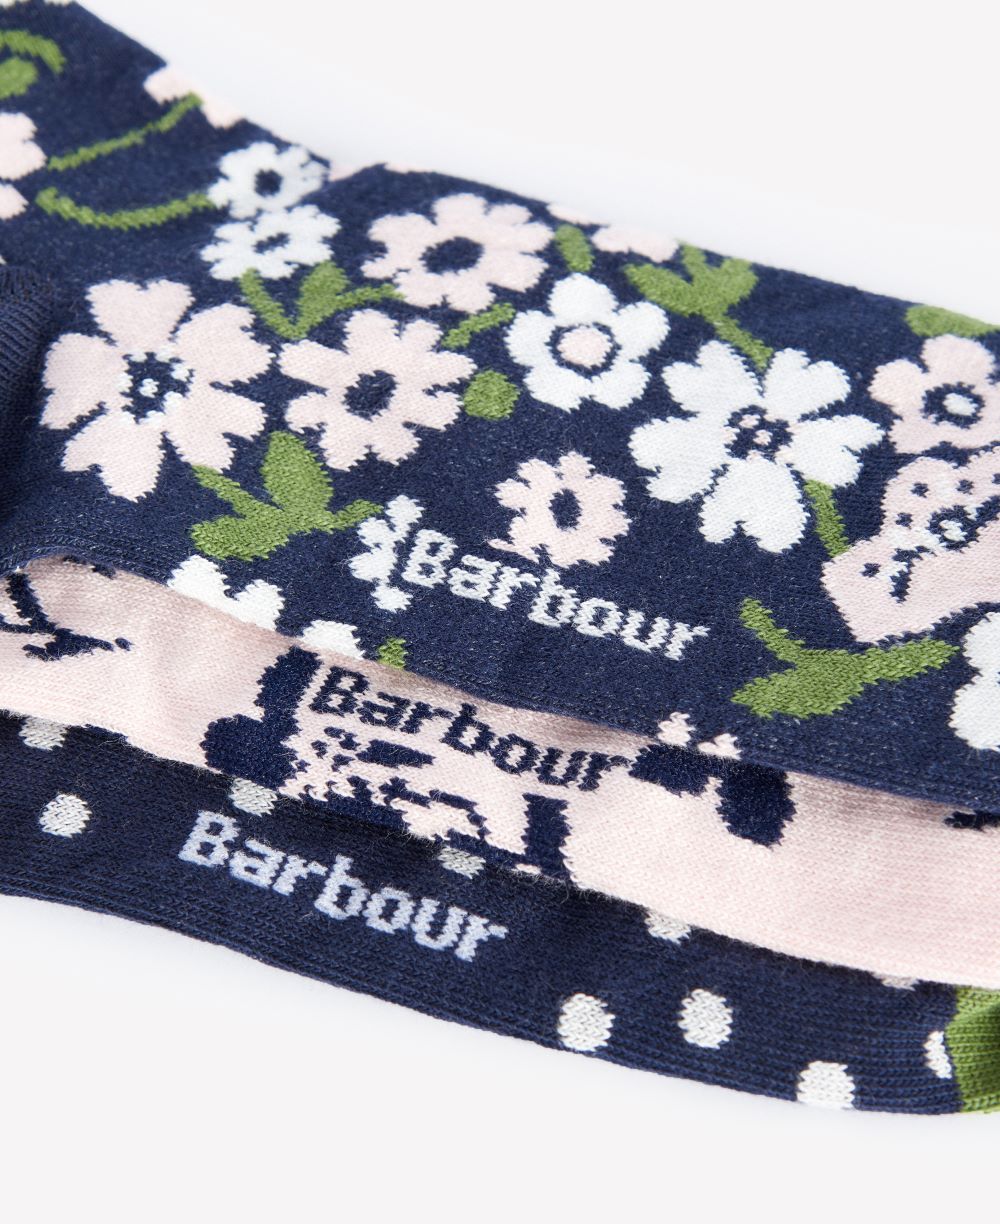 Barbour Ladies Sock Gift Set in Floral